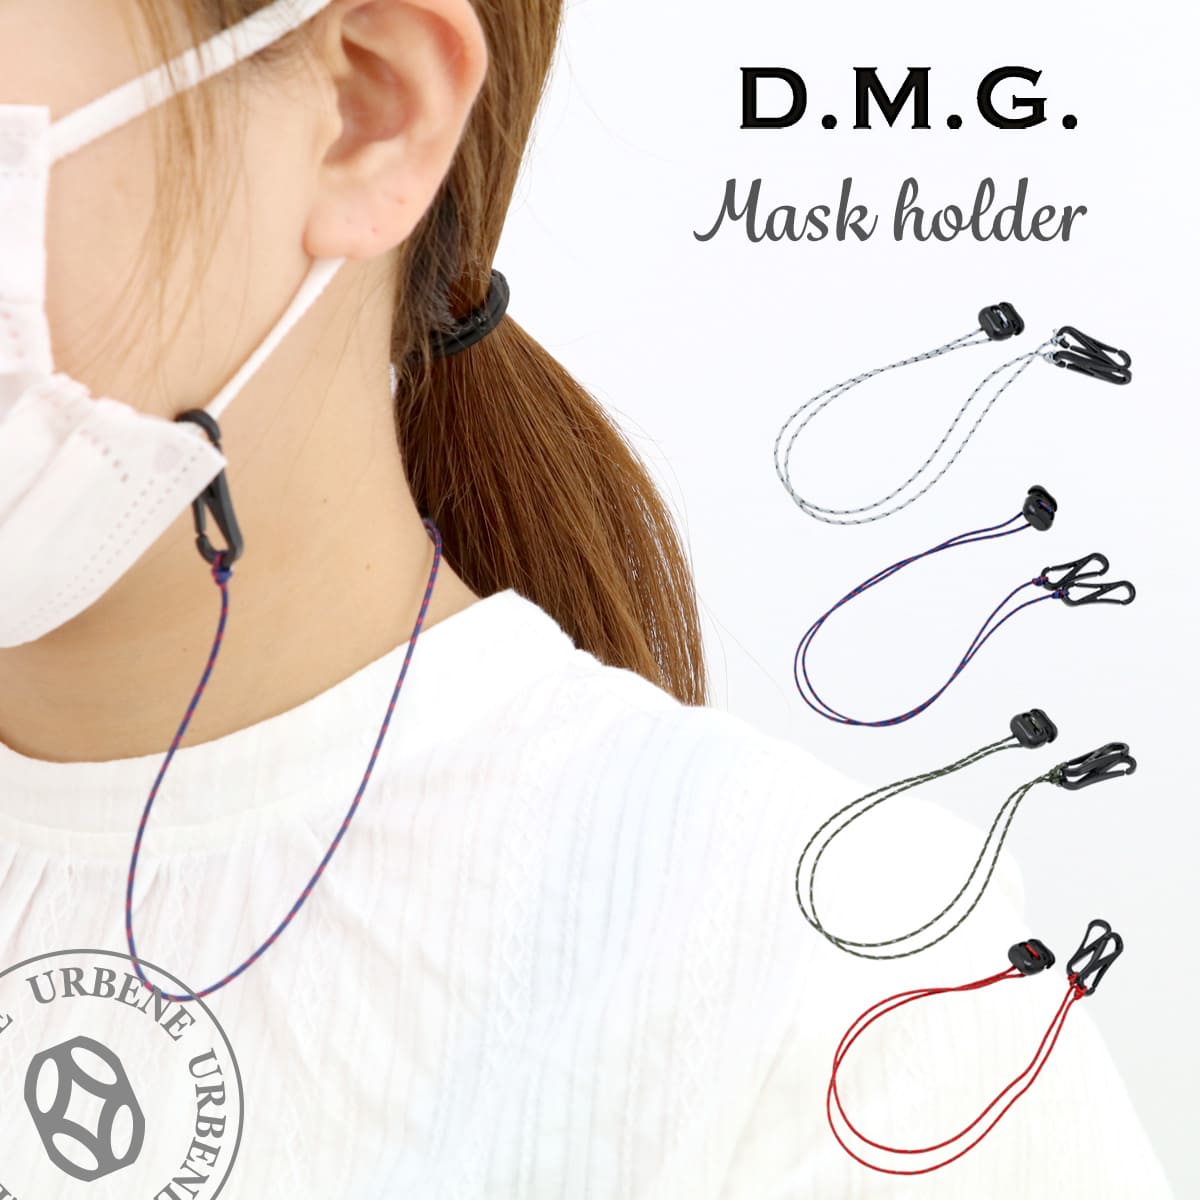 【マスク用ストラップ】ドミンゴ マスク ネックス...の商品画像